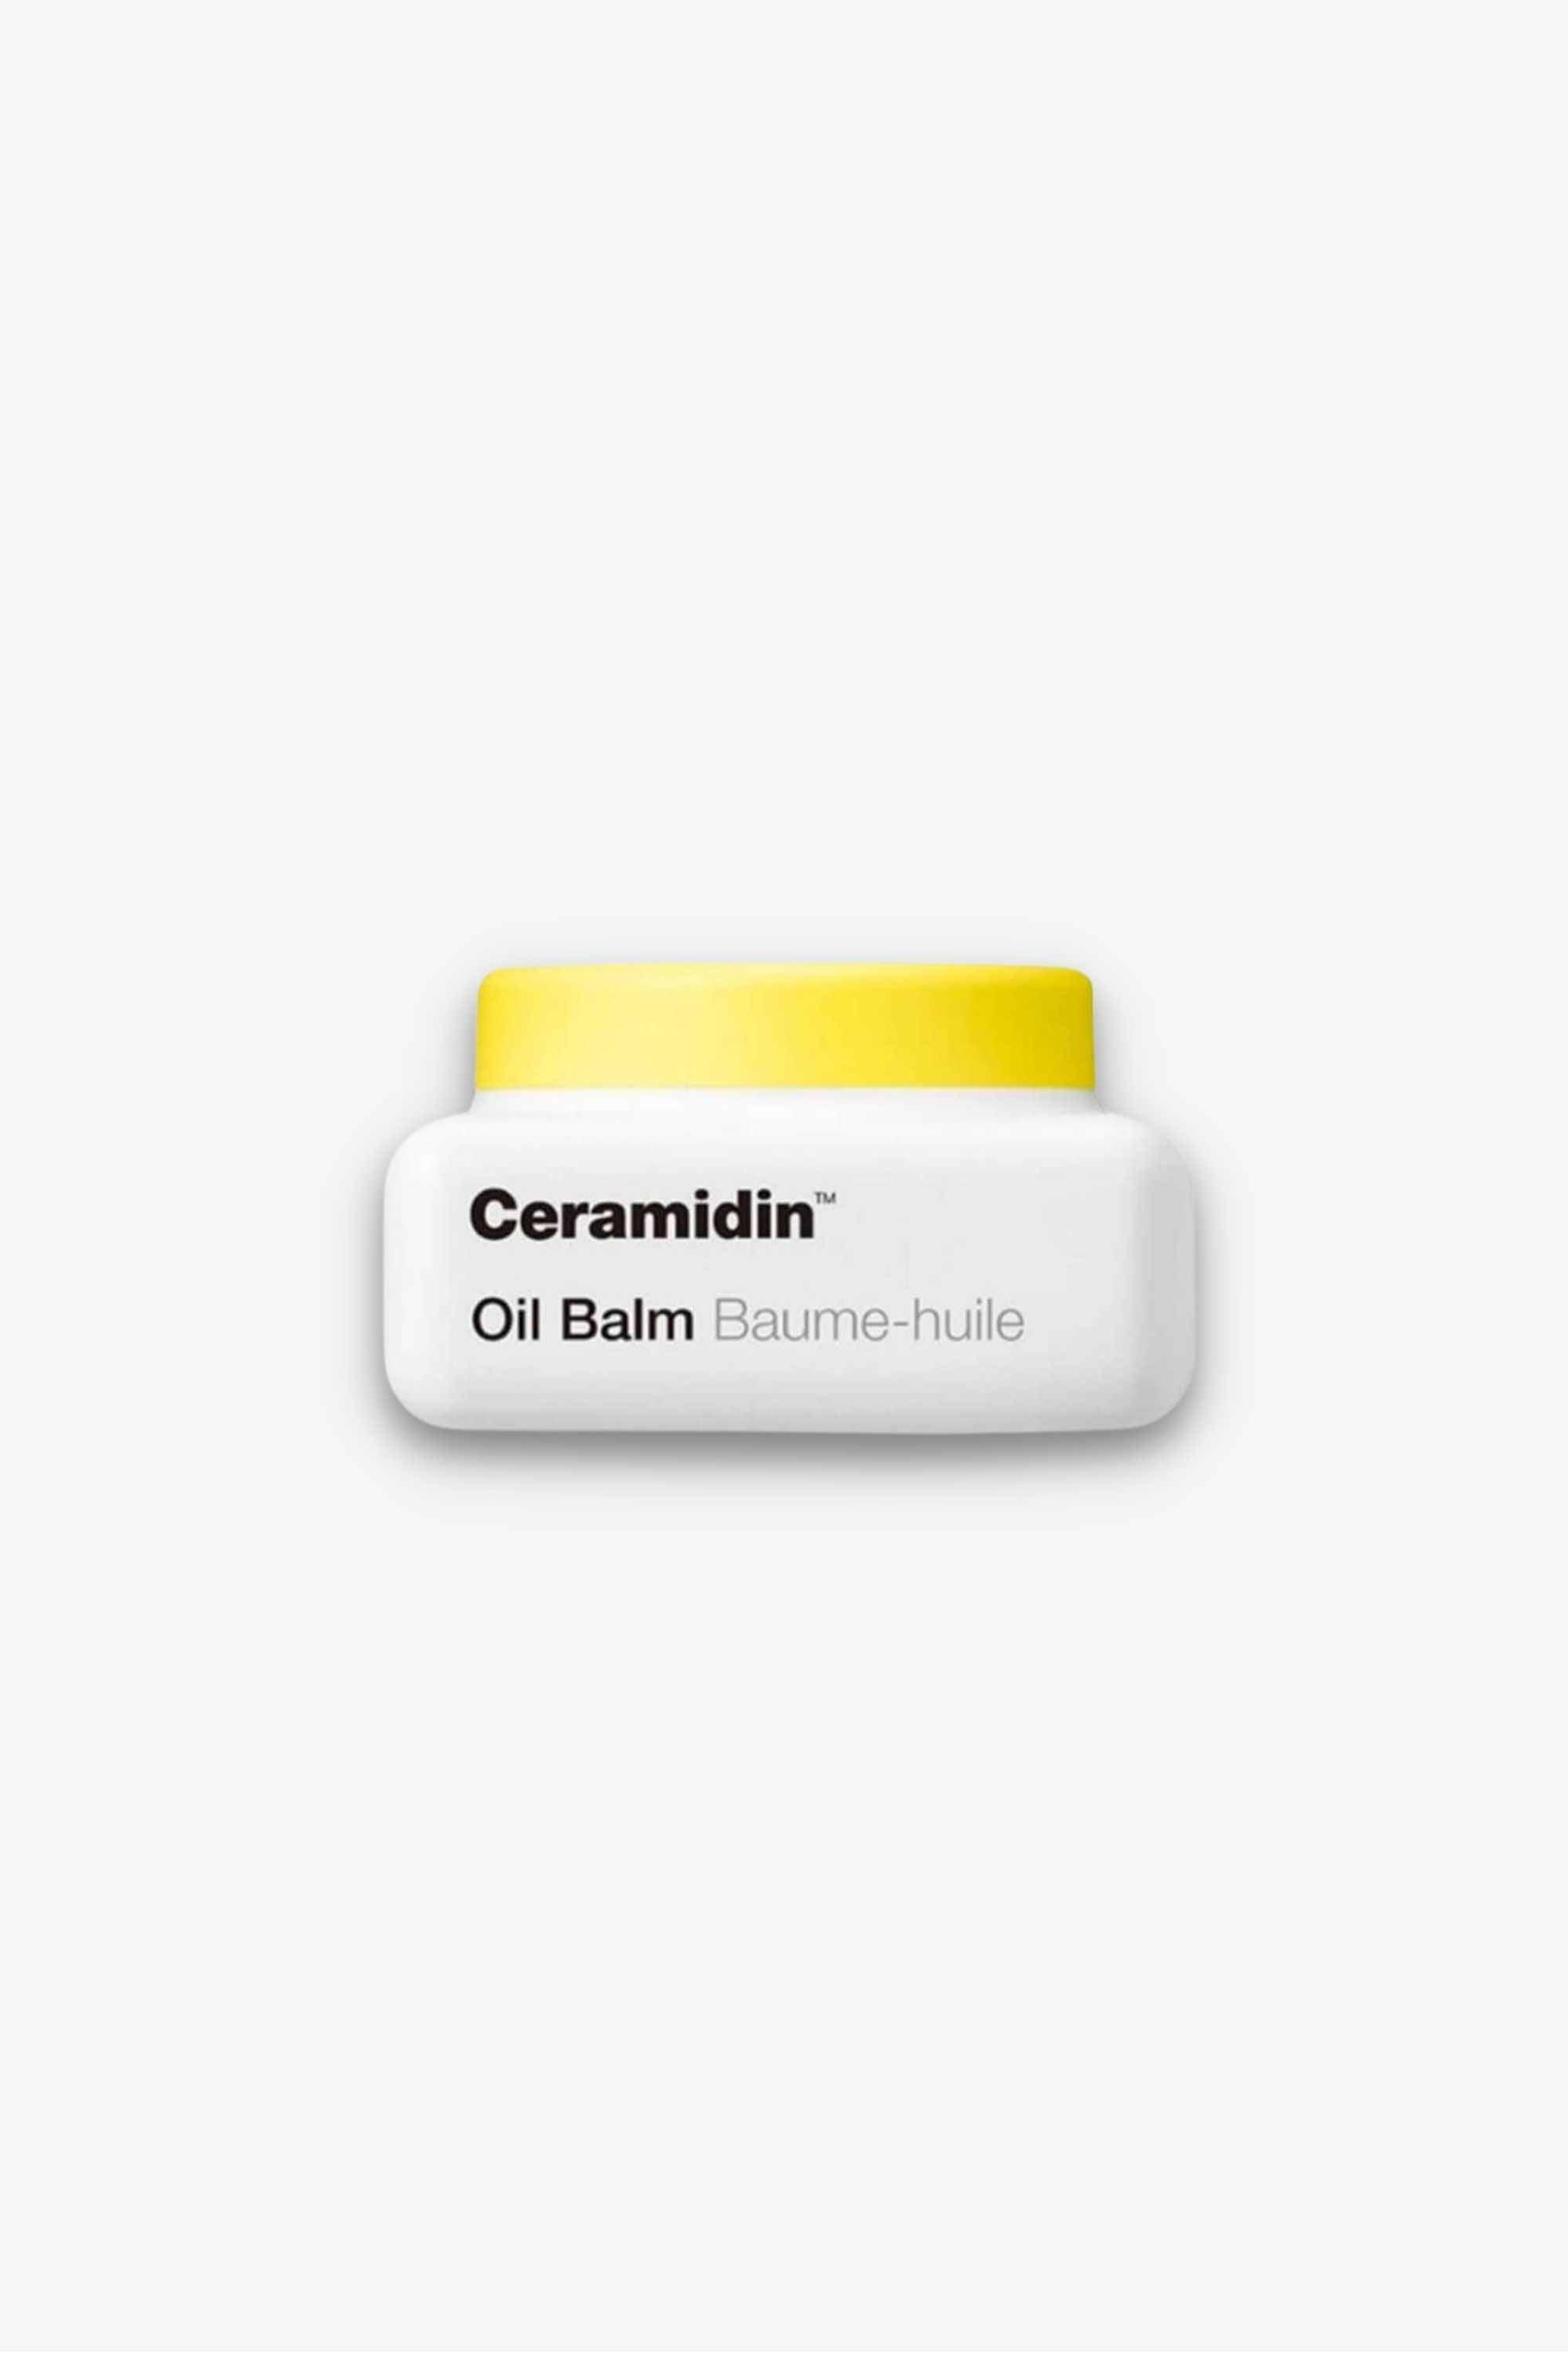 Dr. Jart+ - Ceramidin Oil Balm - 19g